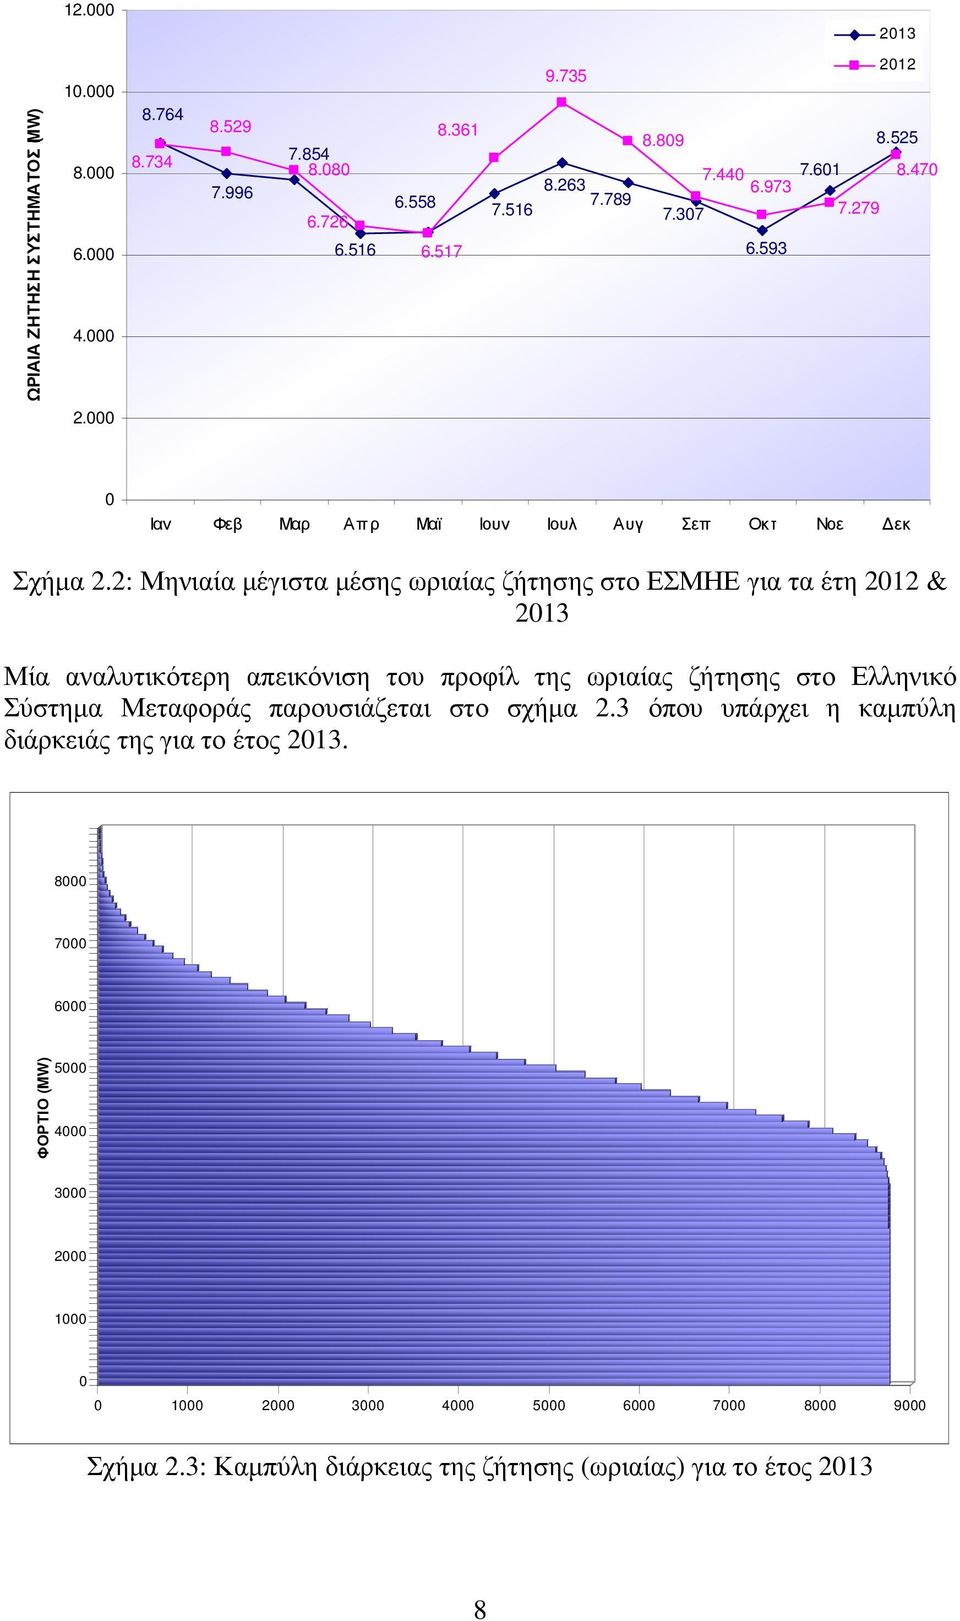 2: Μηνιαία µέγιστα µέσης ωριαίας ζήτησης στο ΕΣΜΗΕ για τα έτη 2012 & 2013 Μία αναλυτικότερη απεικόνιση του προφίλ της ωριαίας ζήτησης στο Ελληνικό Σύστηµα Μεταφοράς